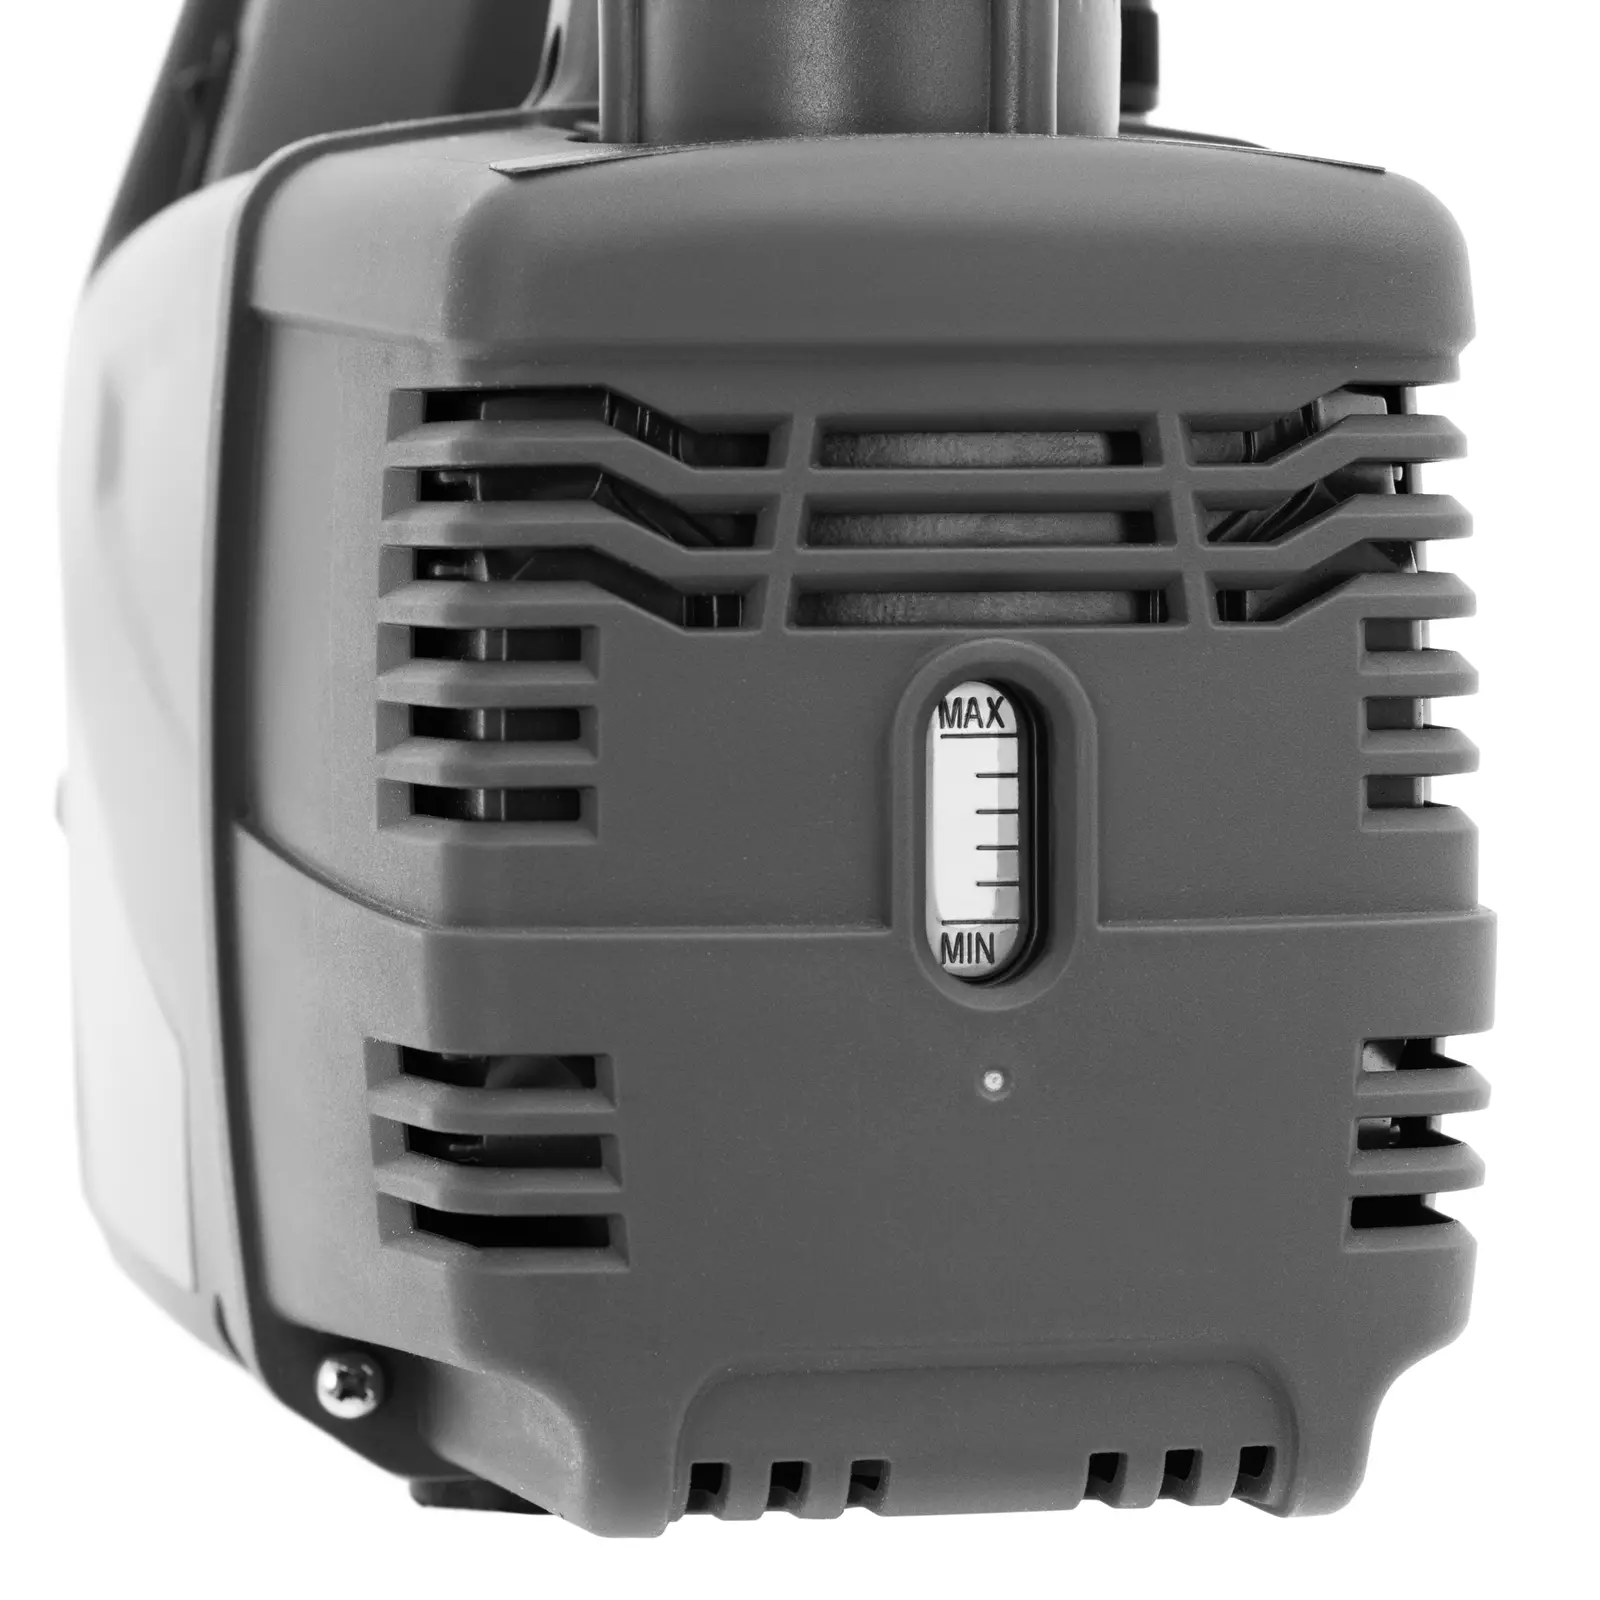 Pompa per vuoto condizionatori - Per refrigeranti infiammabili - 186 W - Design a due stadi